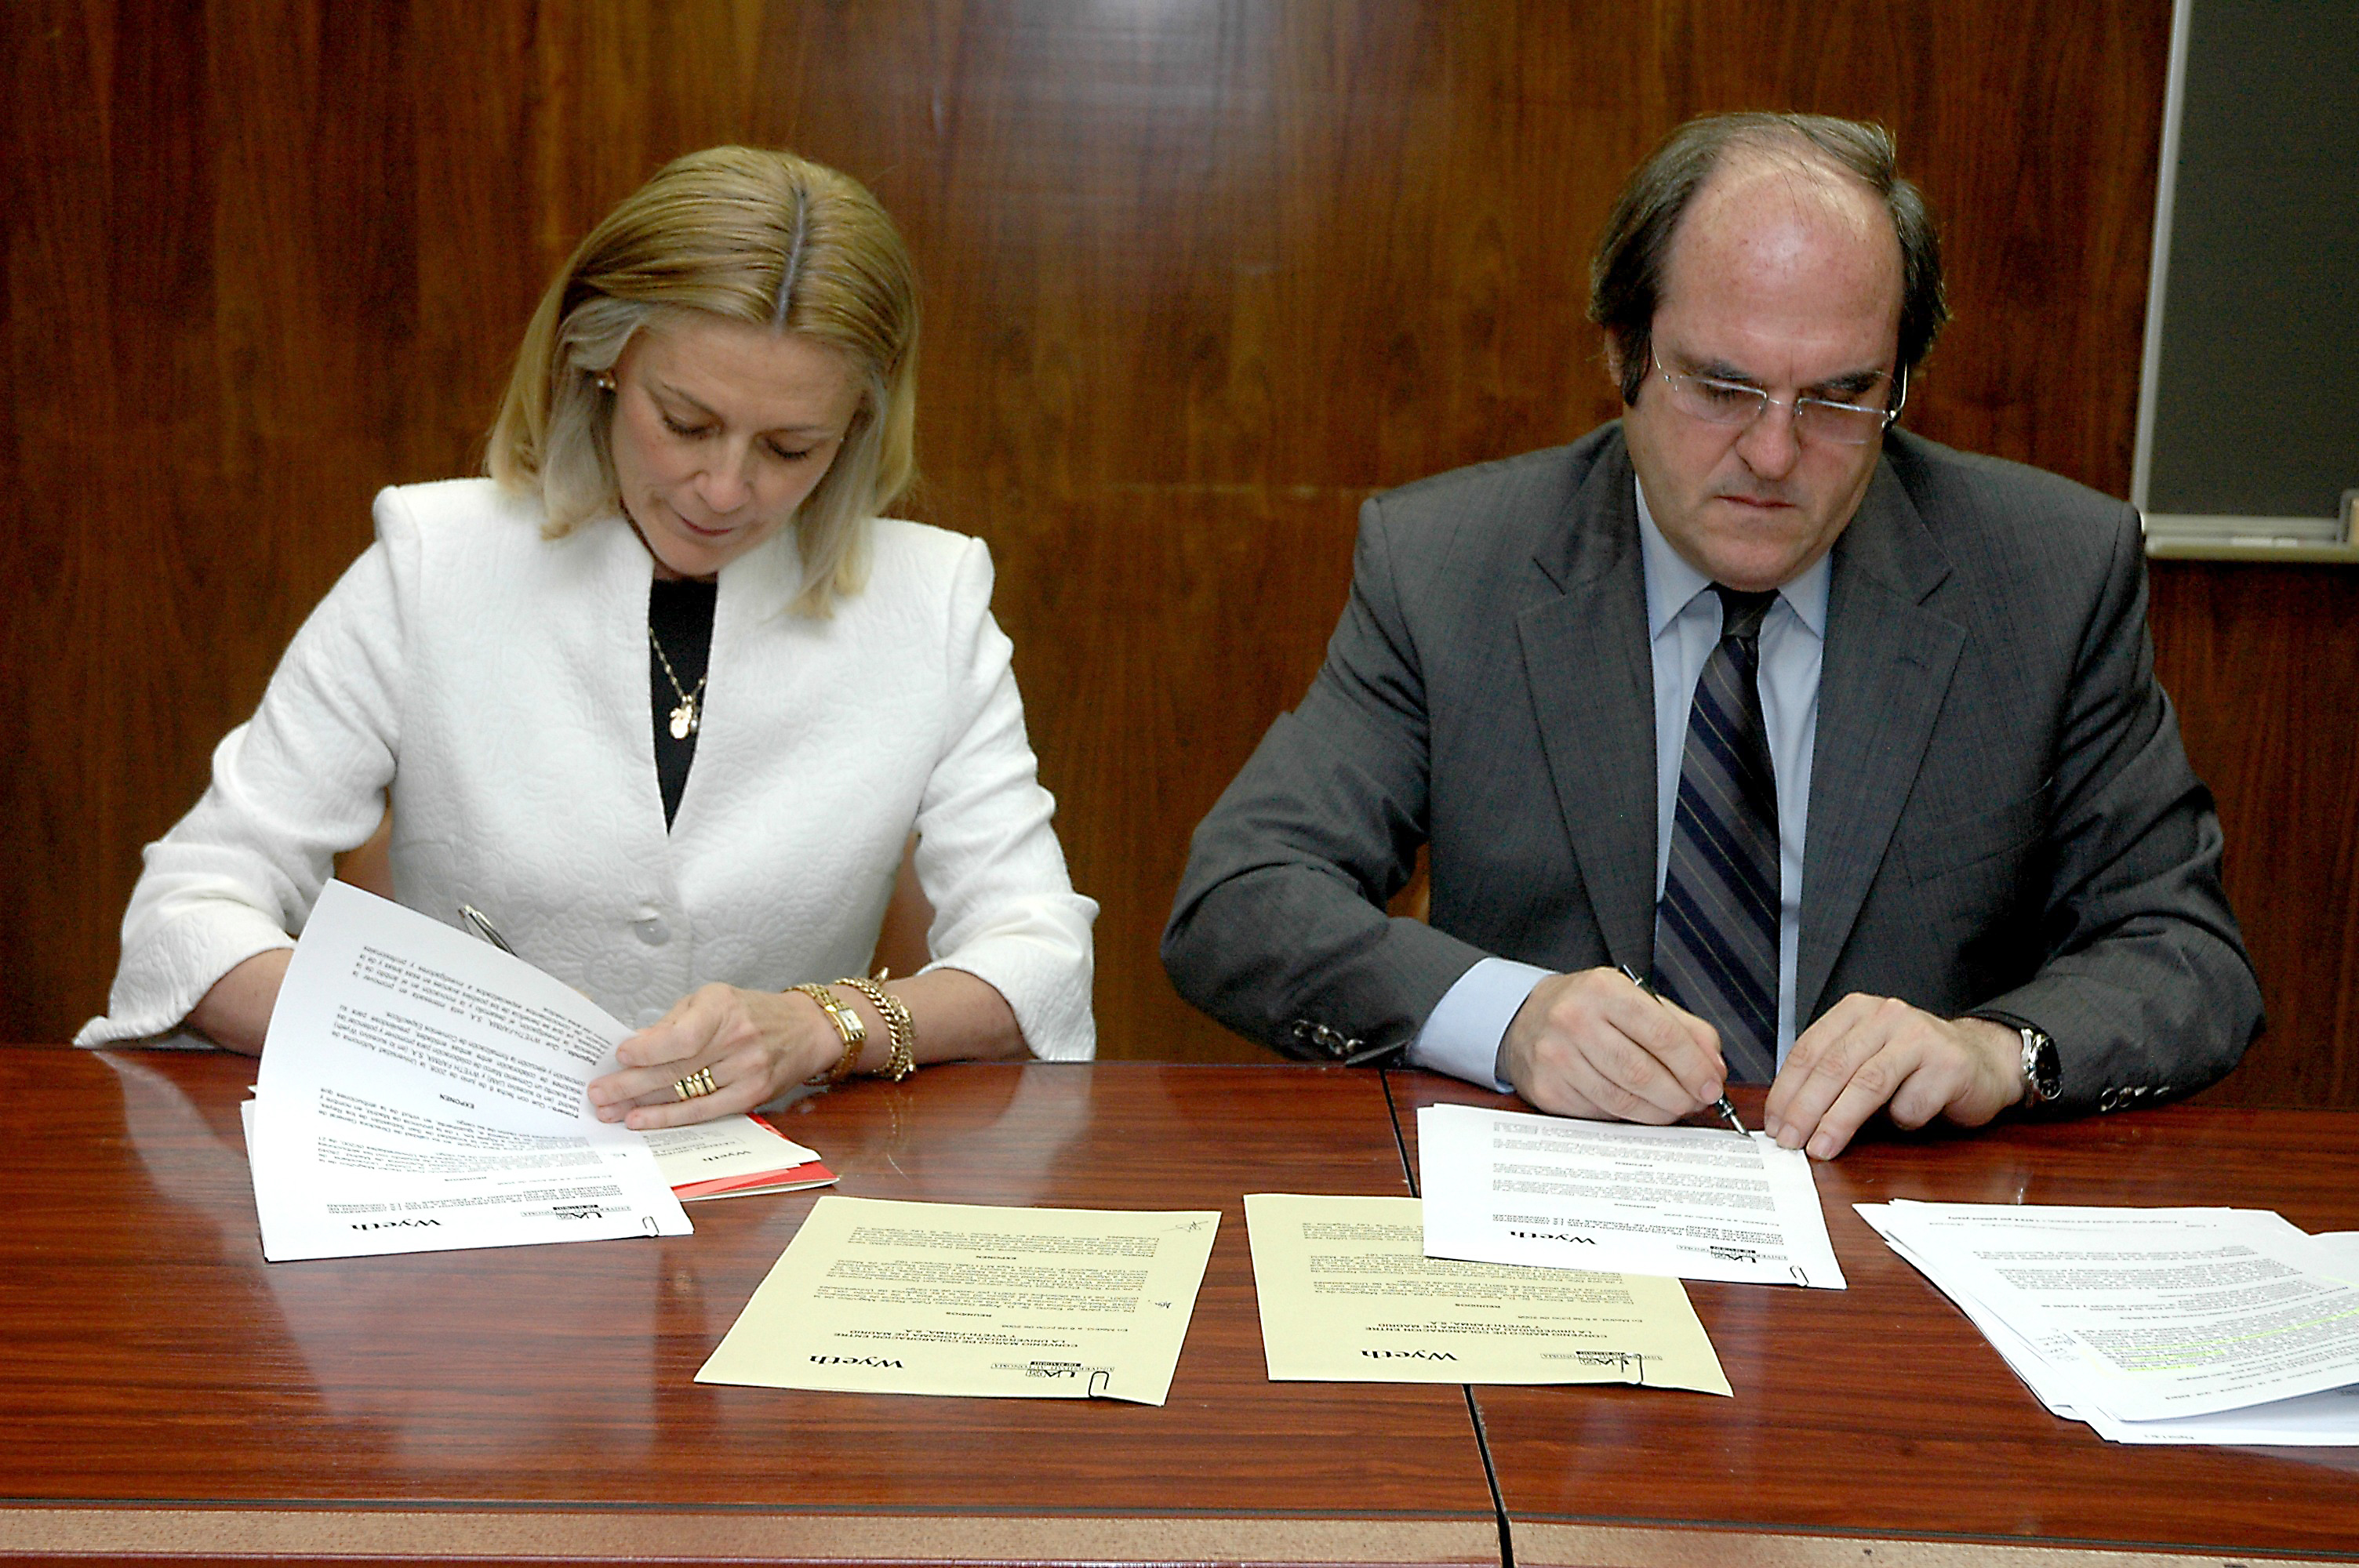 acto de firma del convenio el rector de la UAM, Ángel Gabilondo Pujol, y la directora general de Wyeth Farma, Elvira Sanz Urgoiti.